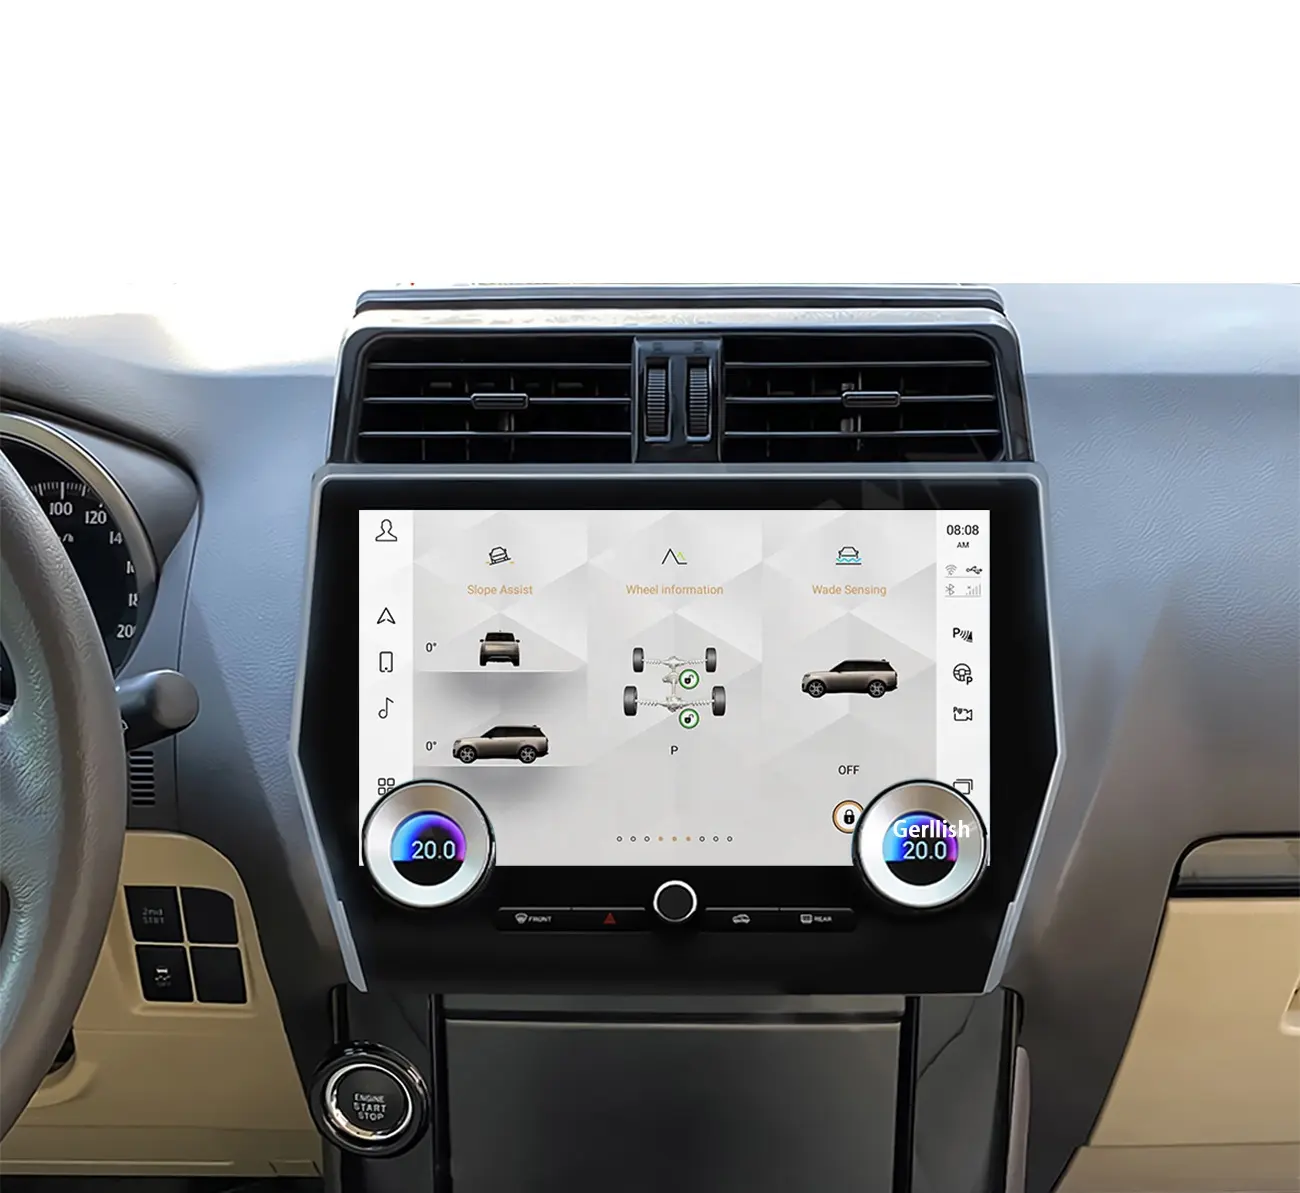 Toyota Land Cruiser Prado 150 2010 - 2022 için Android araba radyo 2Din Stereo alıcı Autoradio multimedya oynatıcı GPS Navi ünitesi